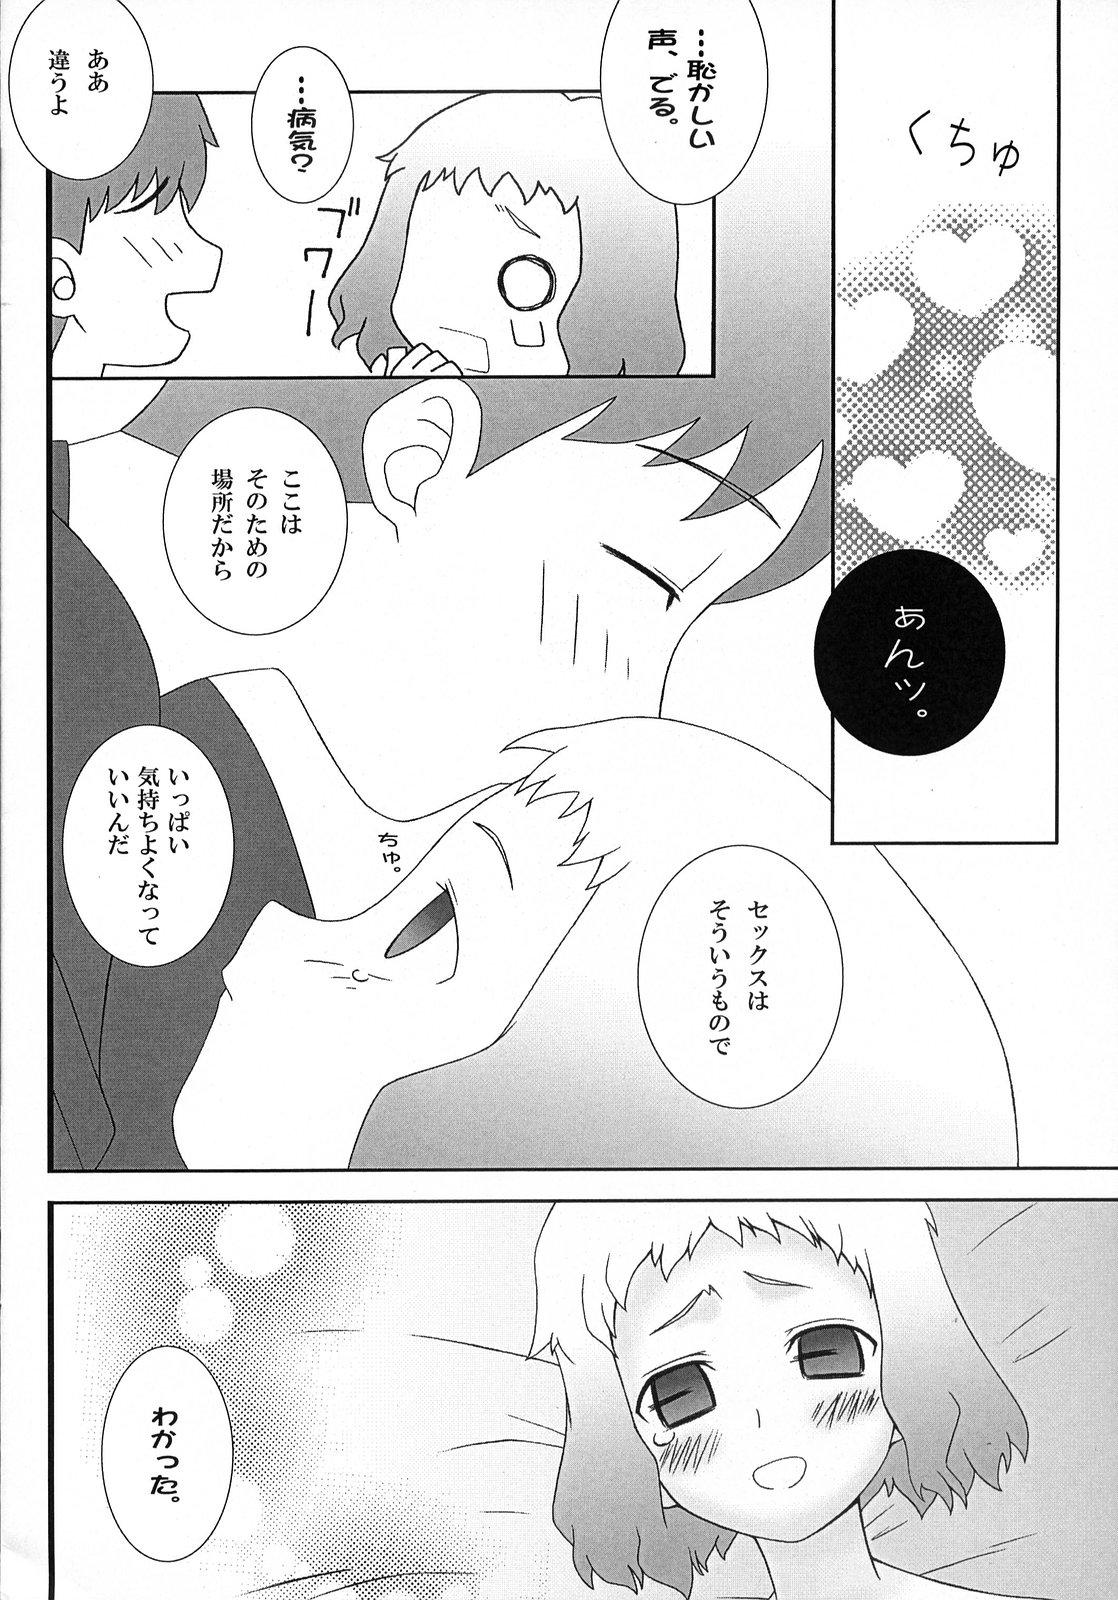 Pica (SC36) [Gachinko Shobou (Koban)] Yappari Leysritt (kyonyuu no hou)] wa eroi na. (Fate/hollow ataraxia) - Fate stay night Fate hollow ataraxia Stepmother - Page 12